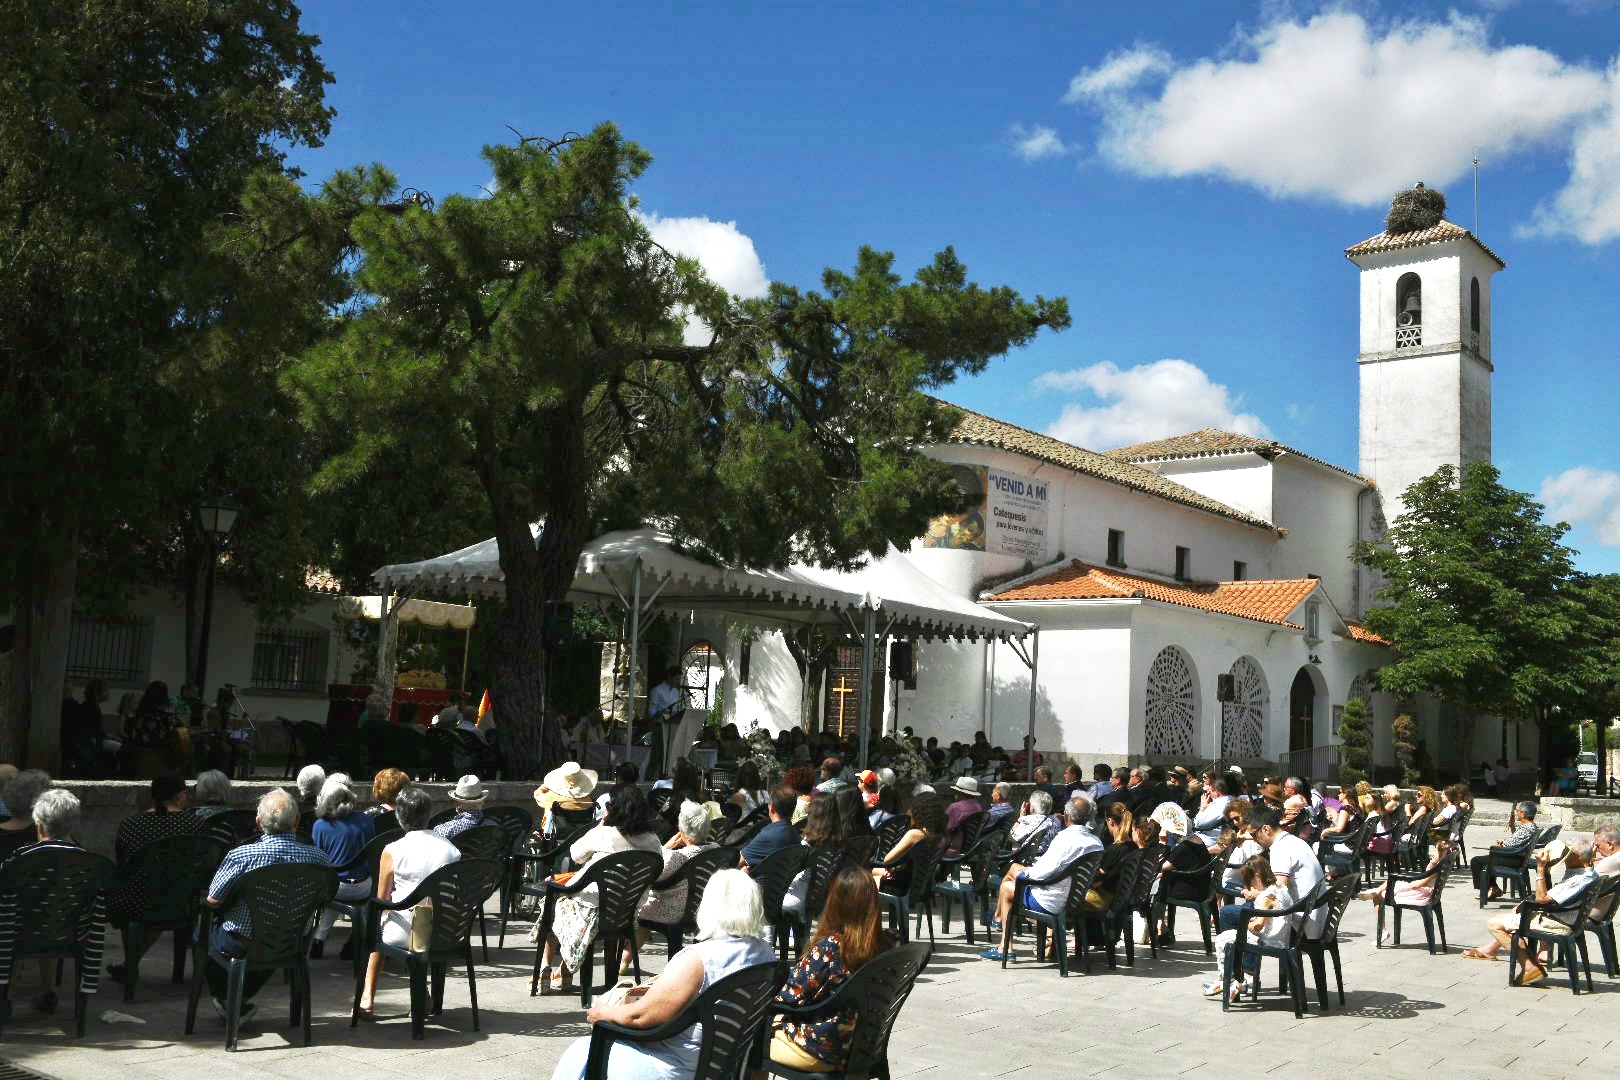 Imagen de la plaza de España durante la celebración del Corpus Christi.